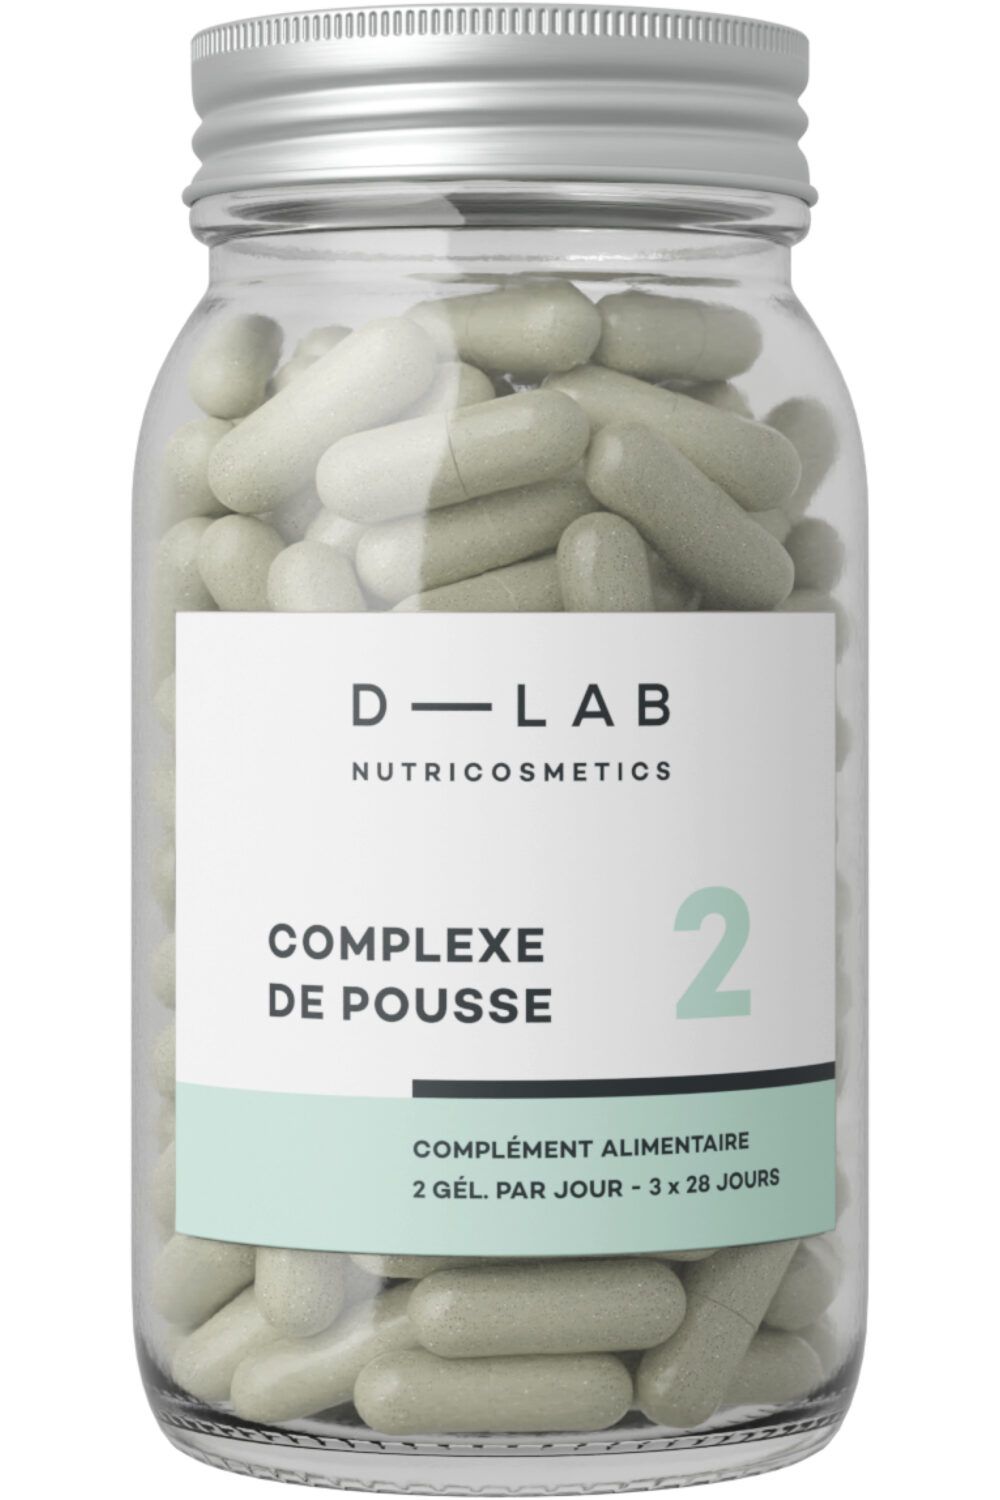 D-LAB NUTRICOSMETICS - New pack Boosteur de Pousse 3 mois